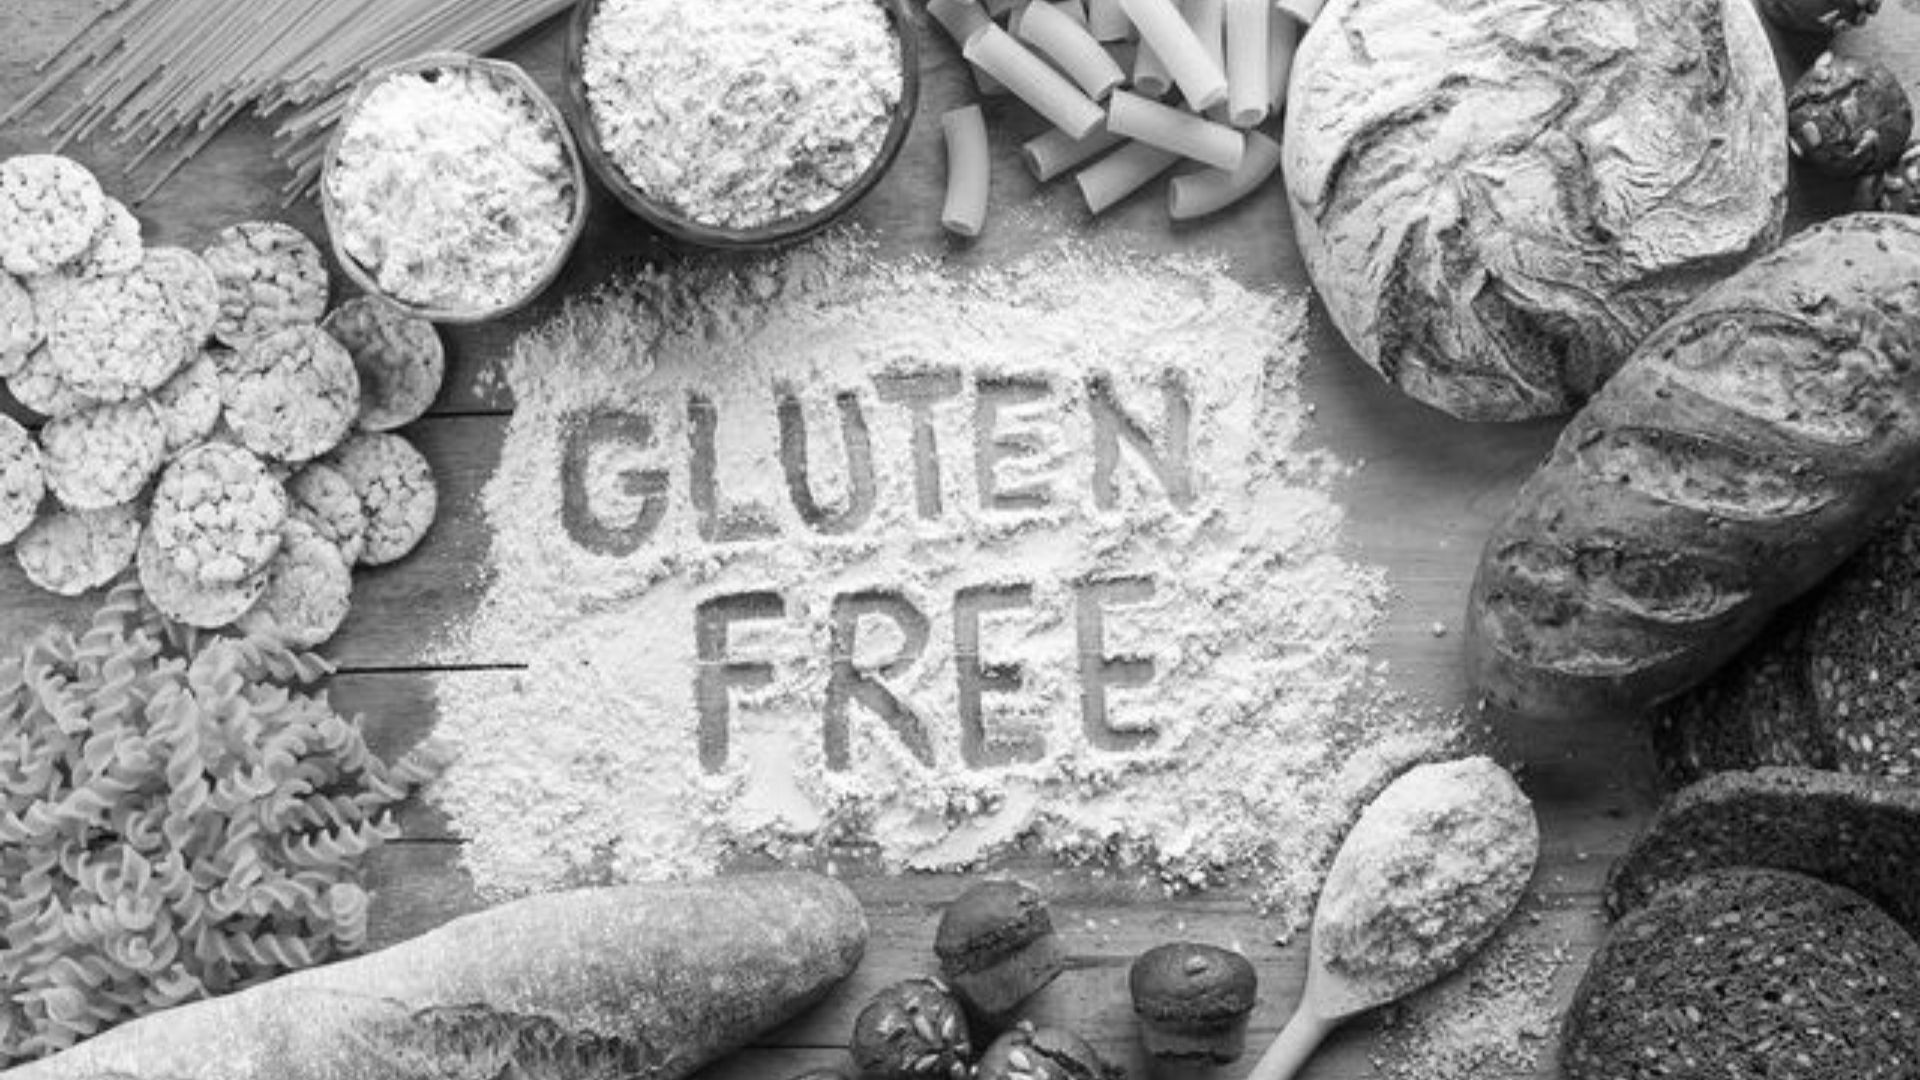 Gluten free?  Why?